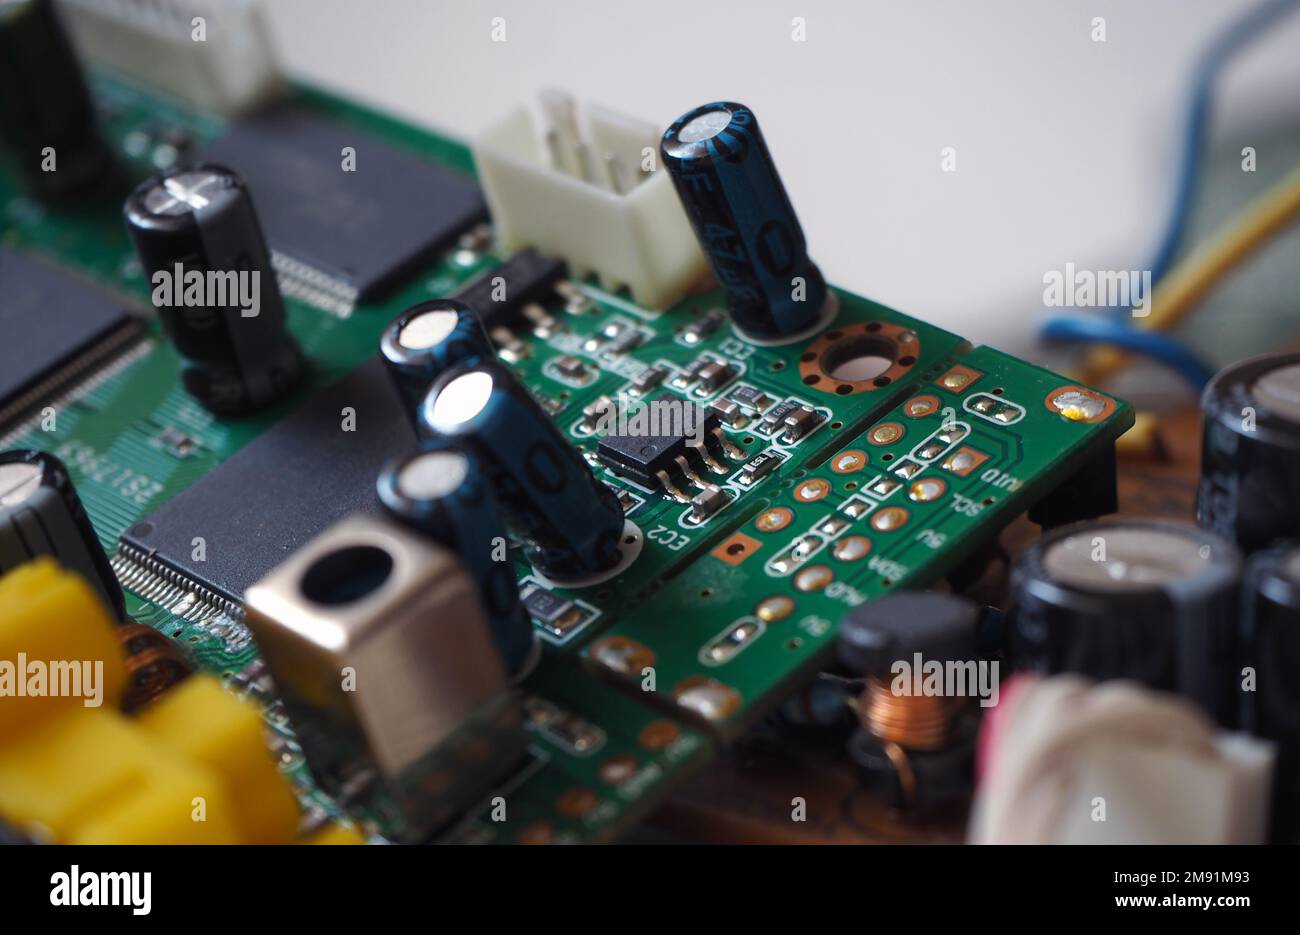 Scheda elettronica con integrata. Immagine digitale Microchip. Background hi-tech. Foto Stock